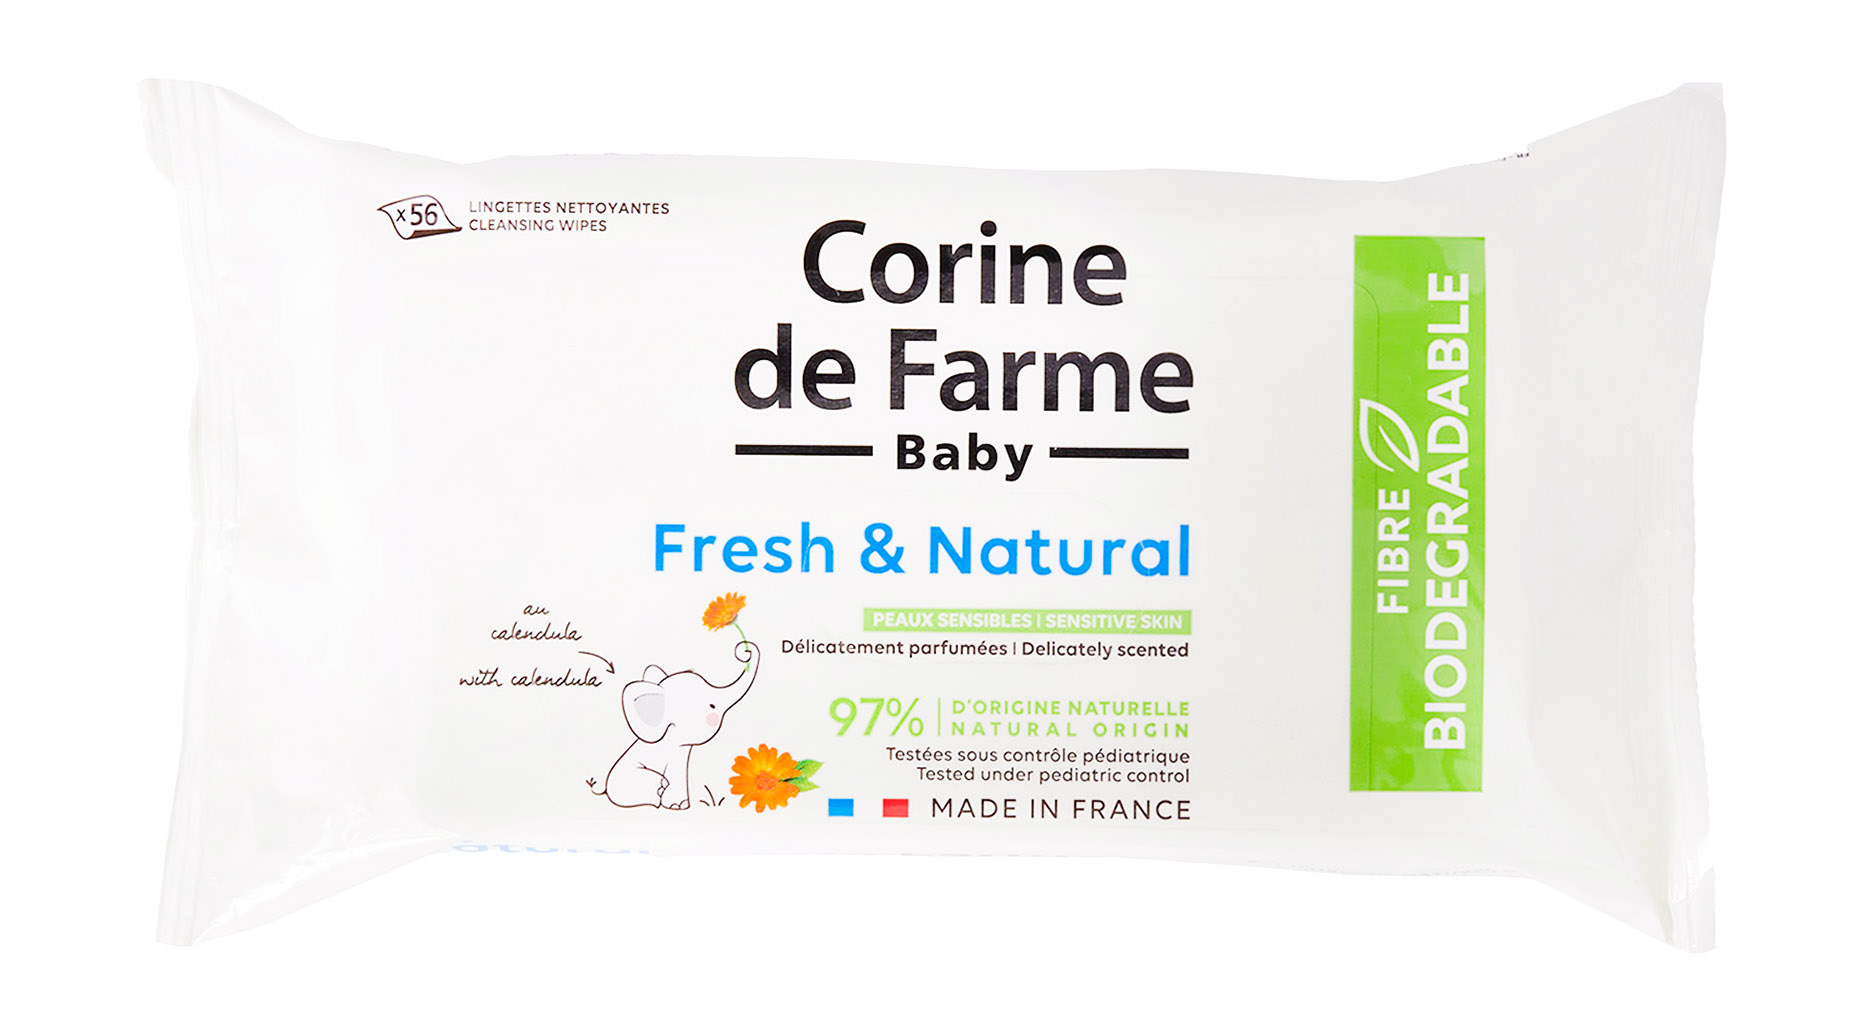 Салфетки влажные Corine de Farme Fresh & Natural для детей, 56 шт.